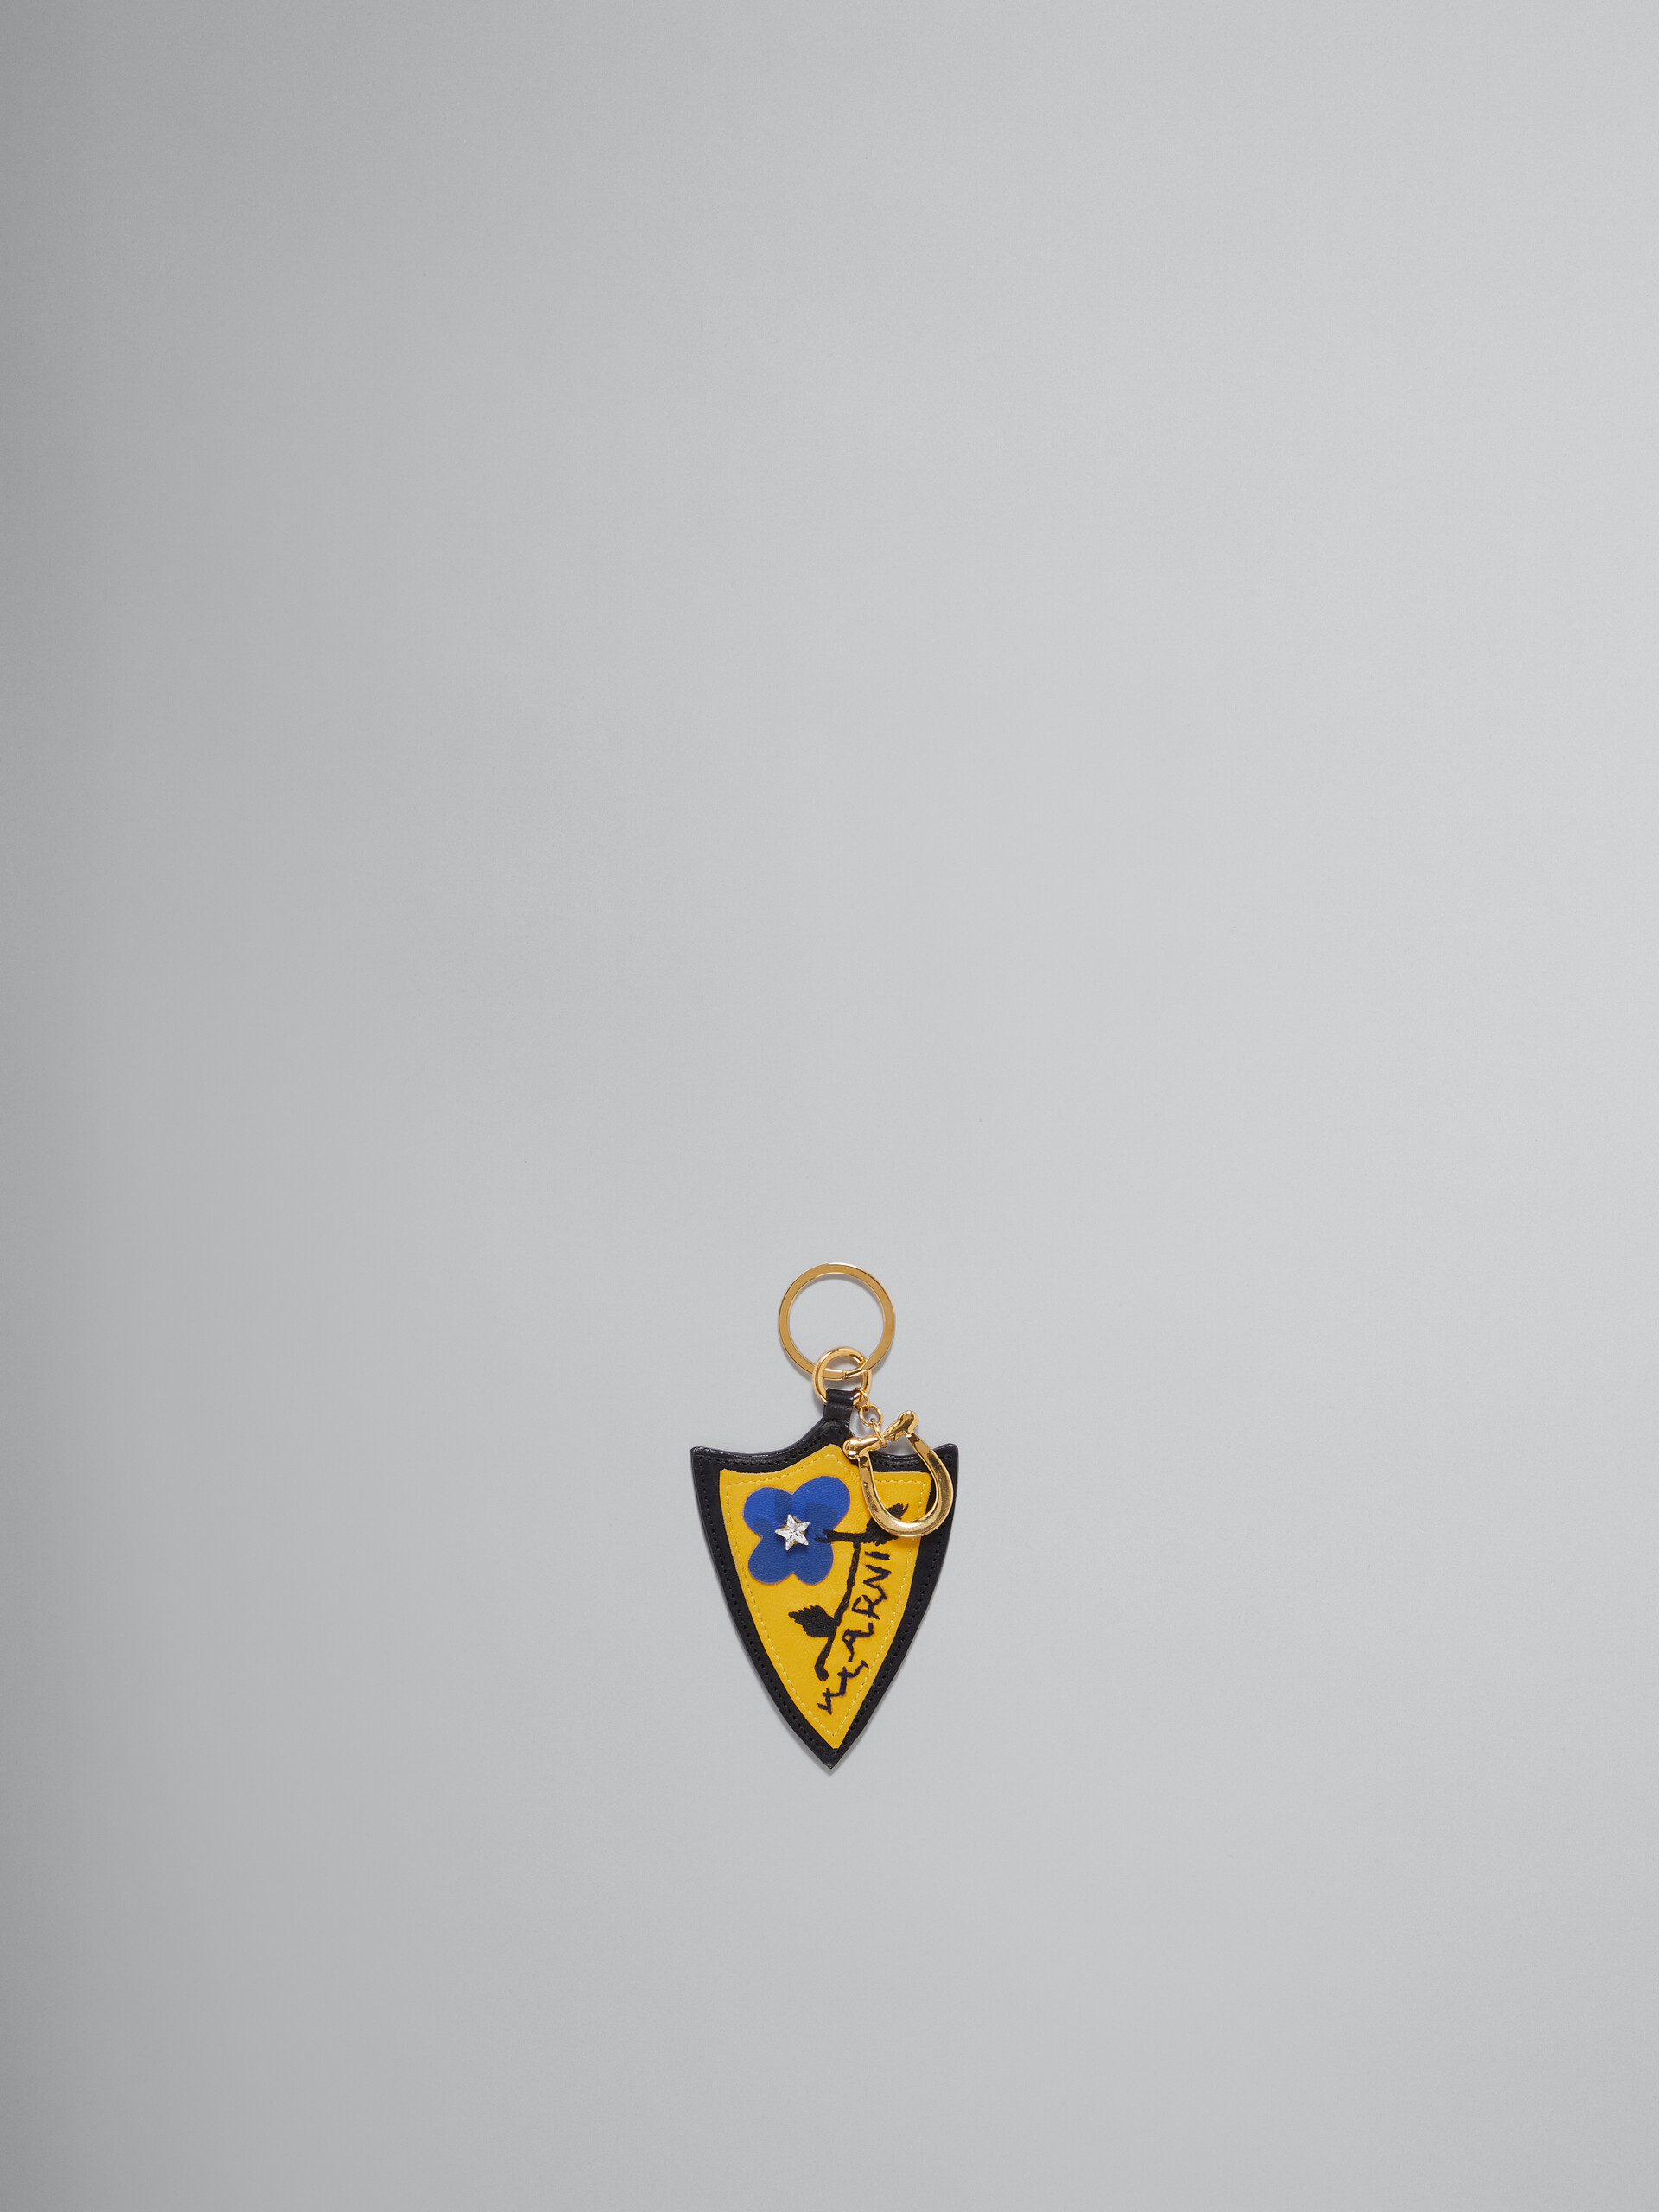 Schlüsselanhänger aus Leder in Gelb und Blau - Schlüsseletui - Image 1